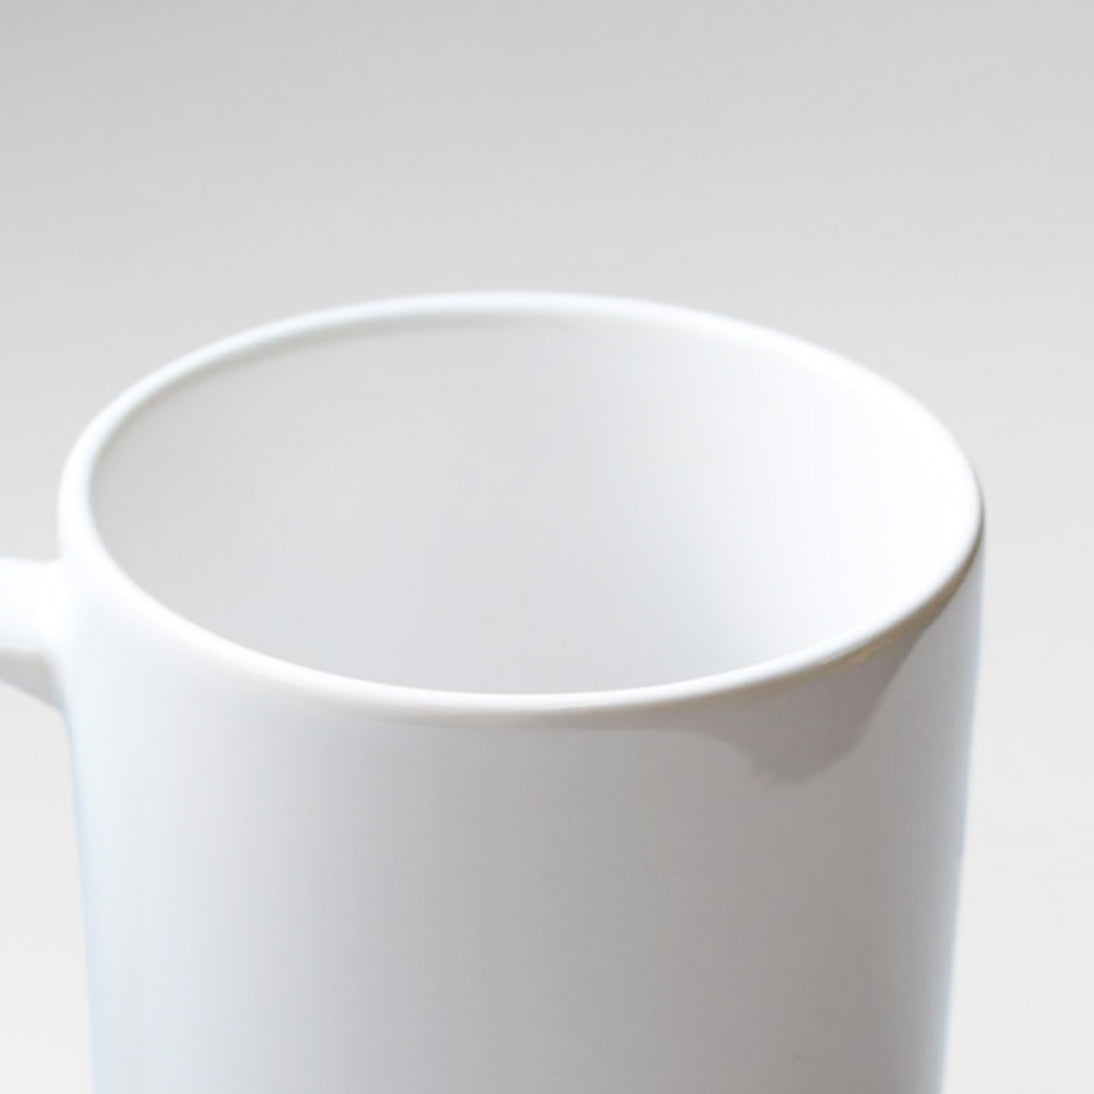 Custom Dog Mug - Personalized Creative Gift Idea For Dog Lover - White Mug